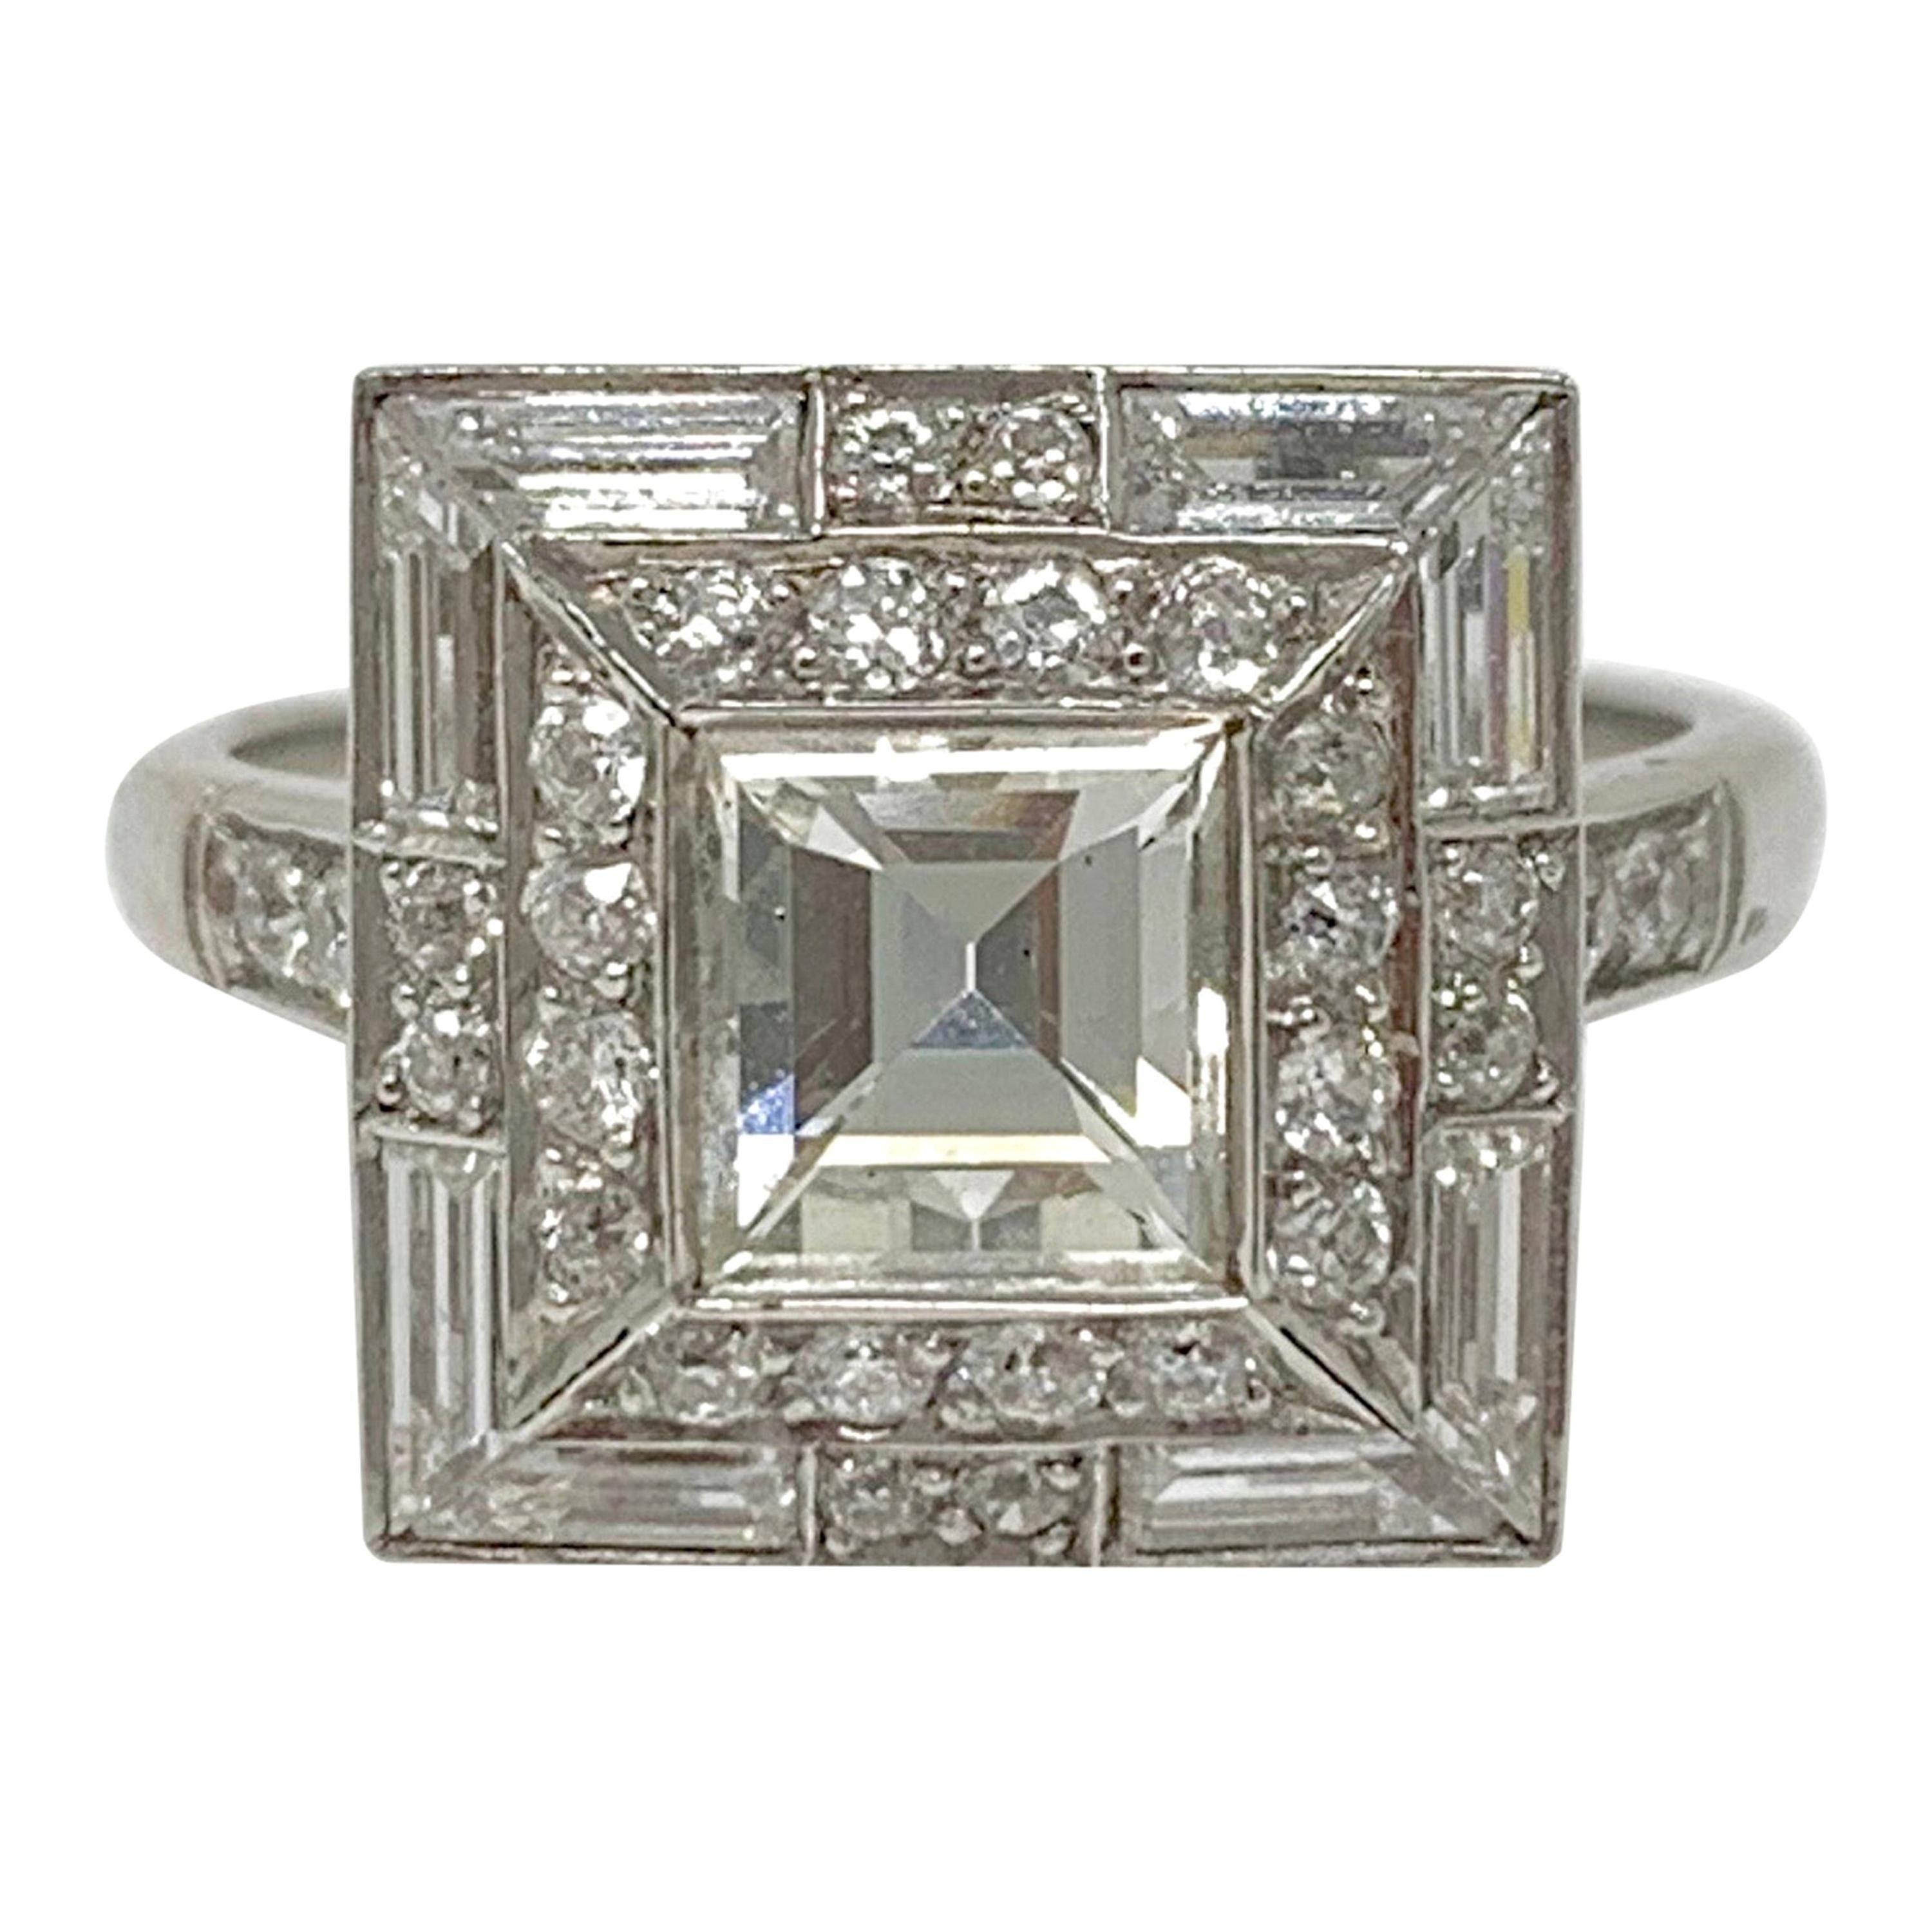 2.18 Carat Diamond Engagement Ring in Platinum For Sale